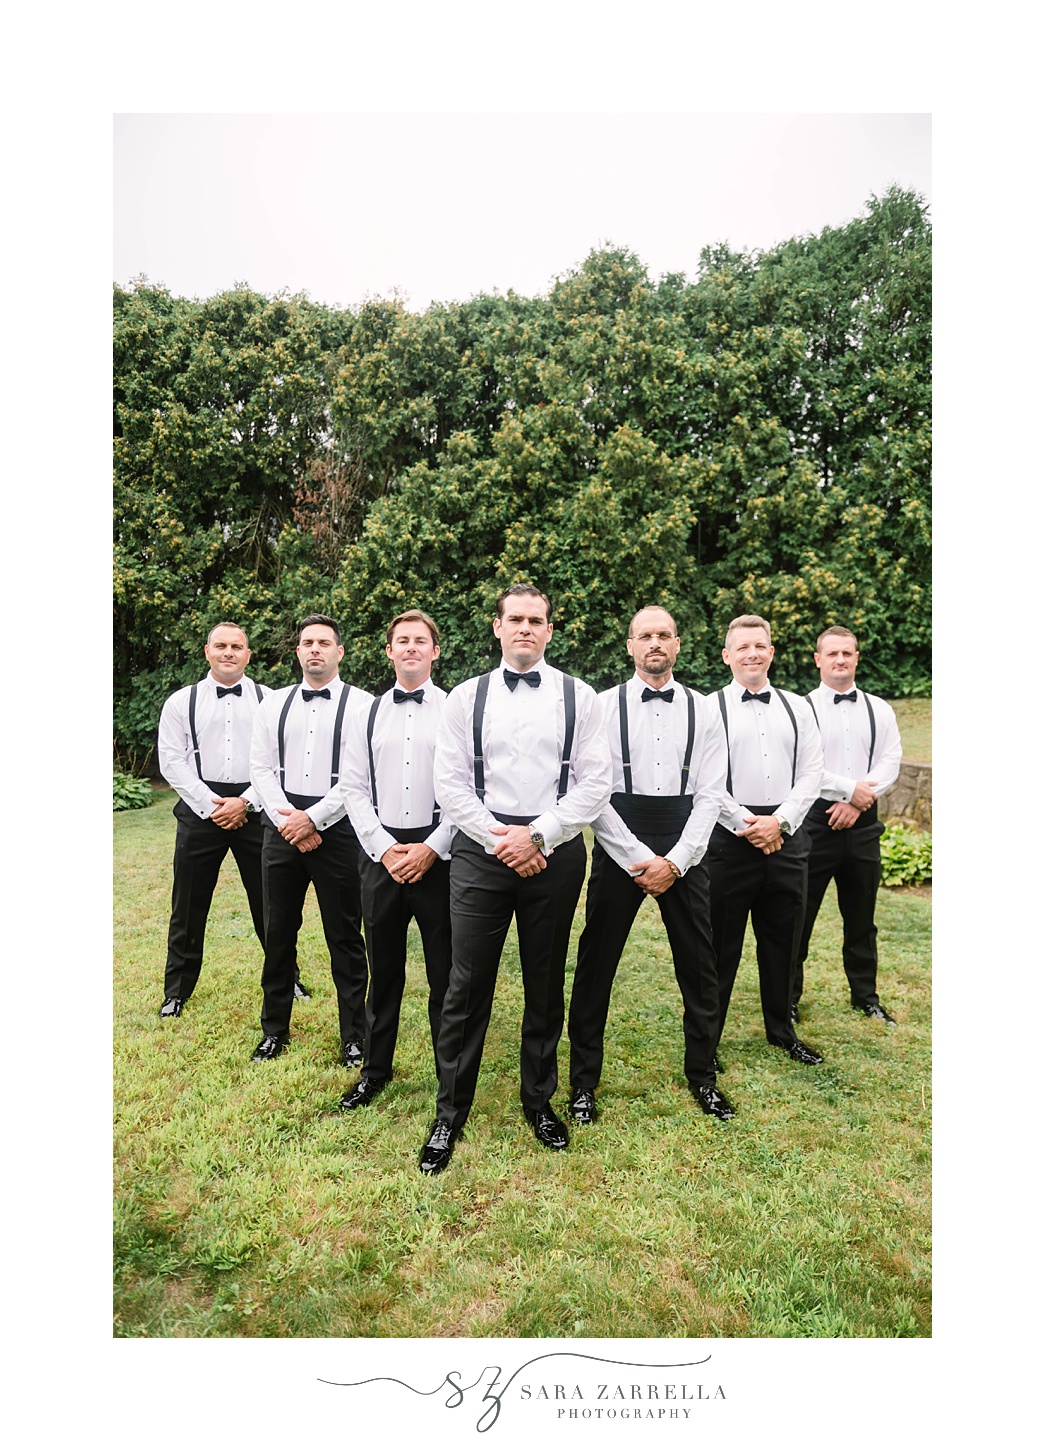 groom poses with groomsmen in suspenders 